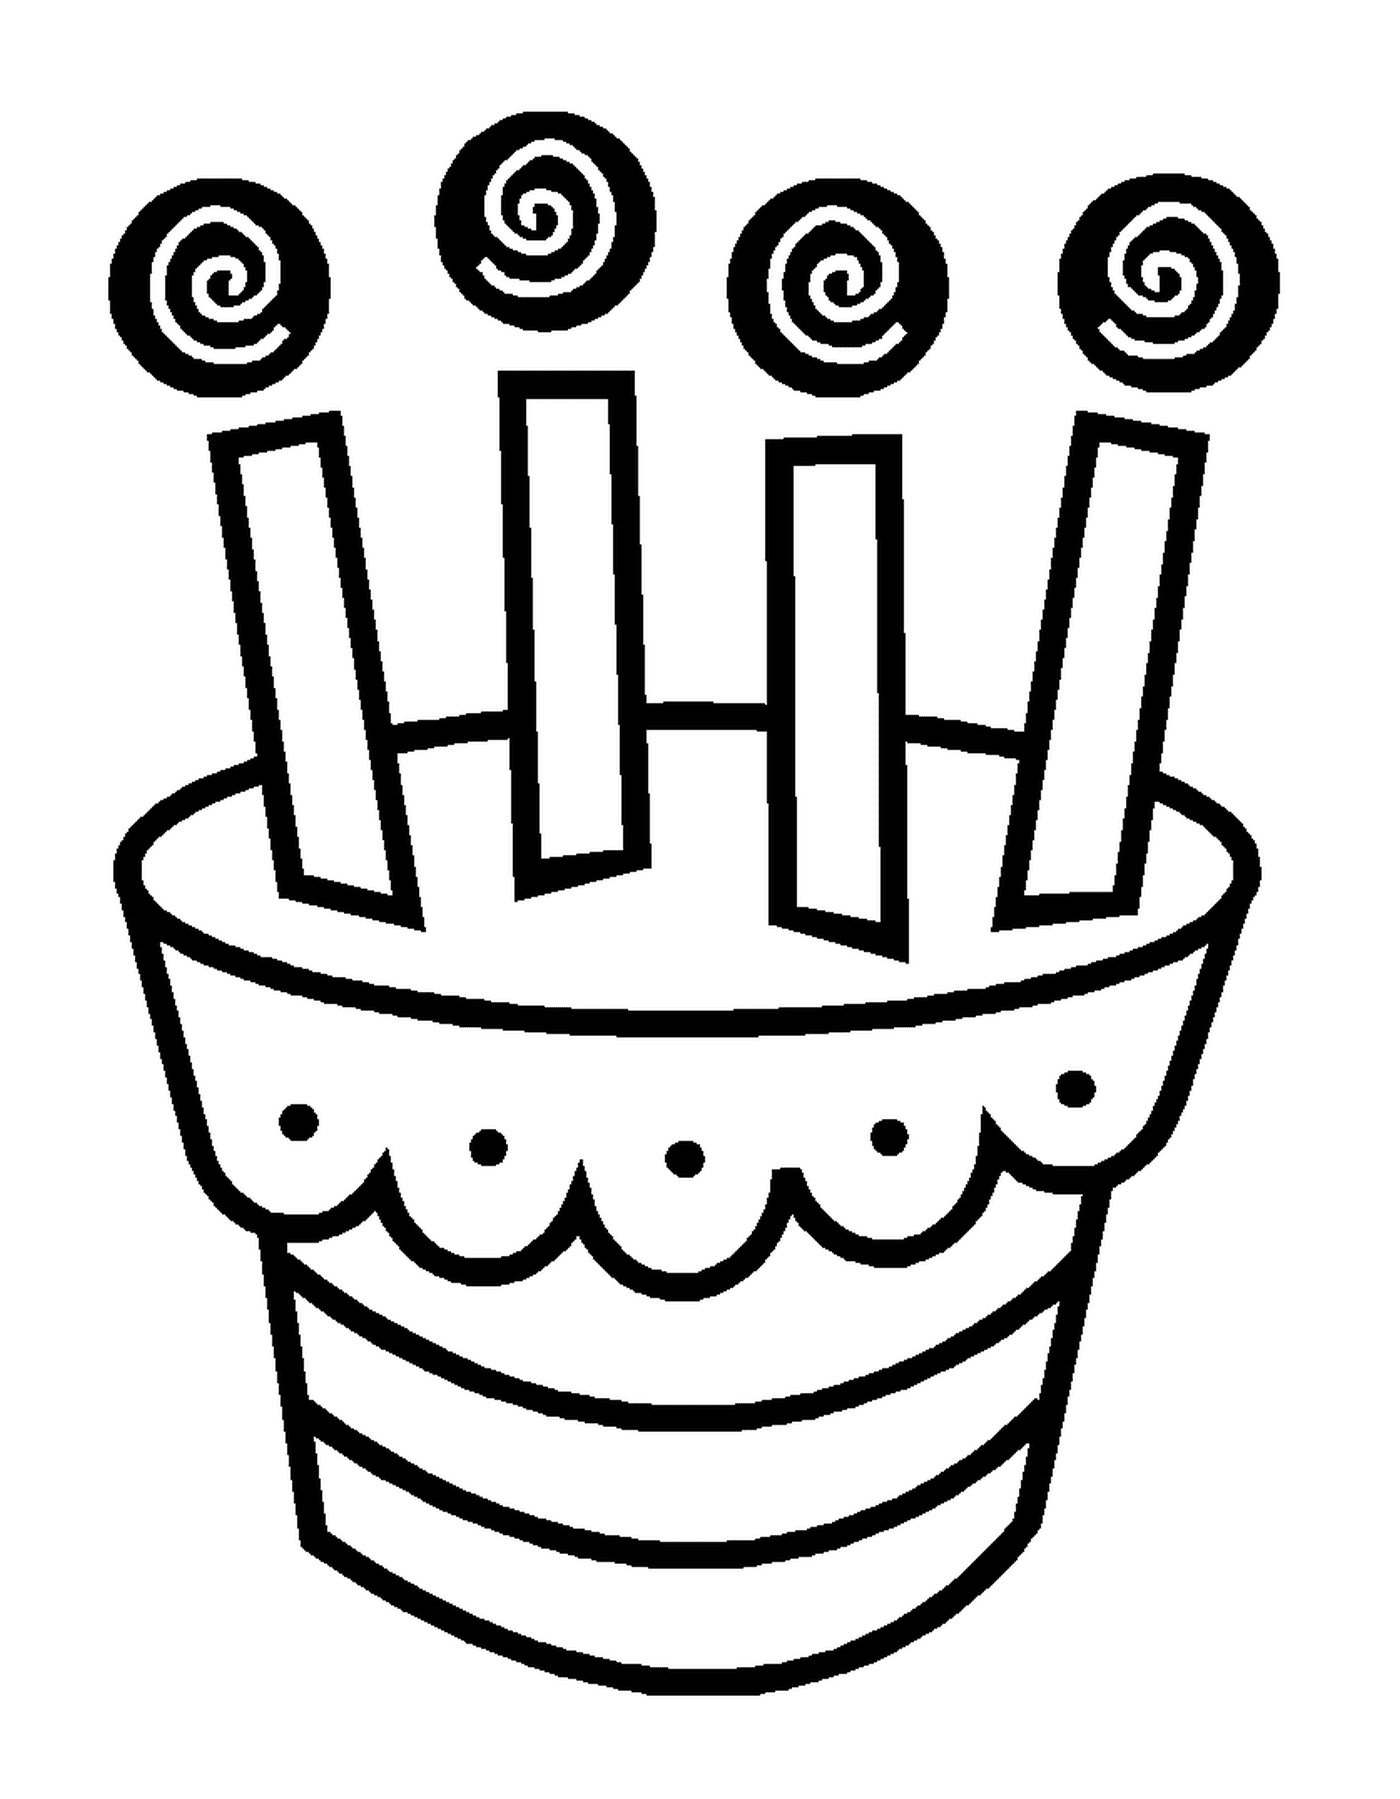  Торт в день рождения 